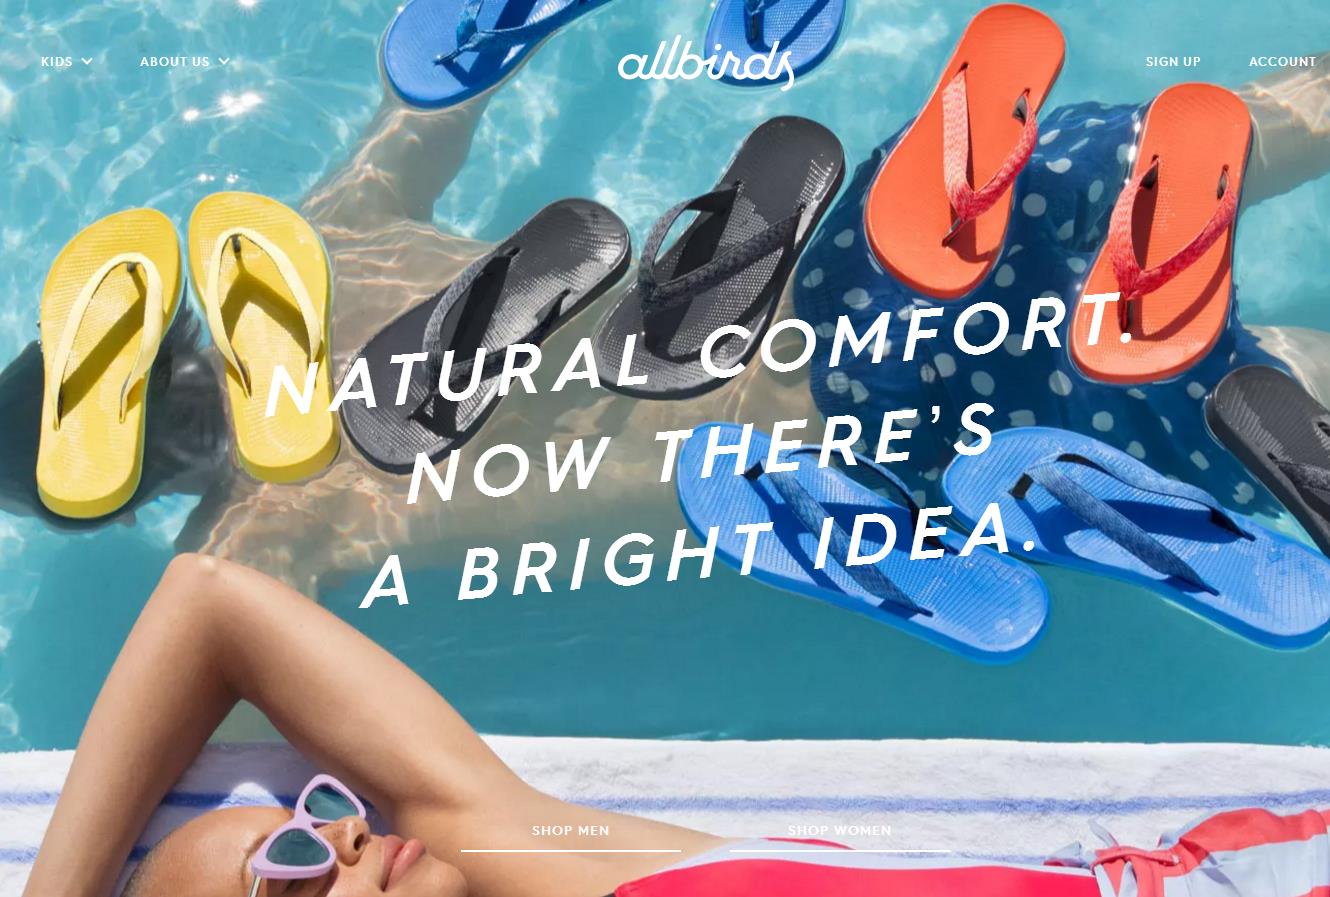 以甘蔗为原料，Allbirds 推出世界首款使用减碳EVA材质的鞋履，获奥斯卡影帝 DiCaprio 投资